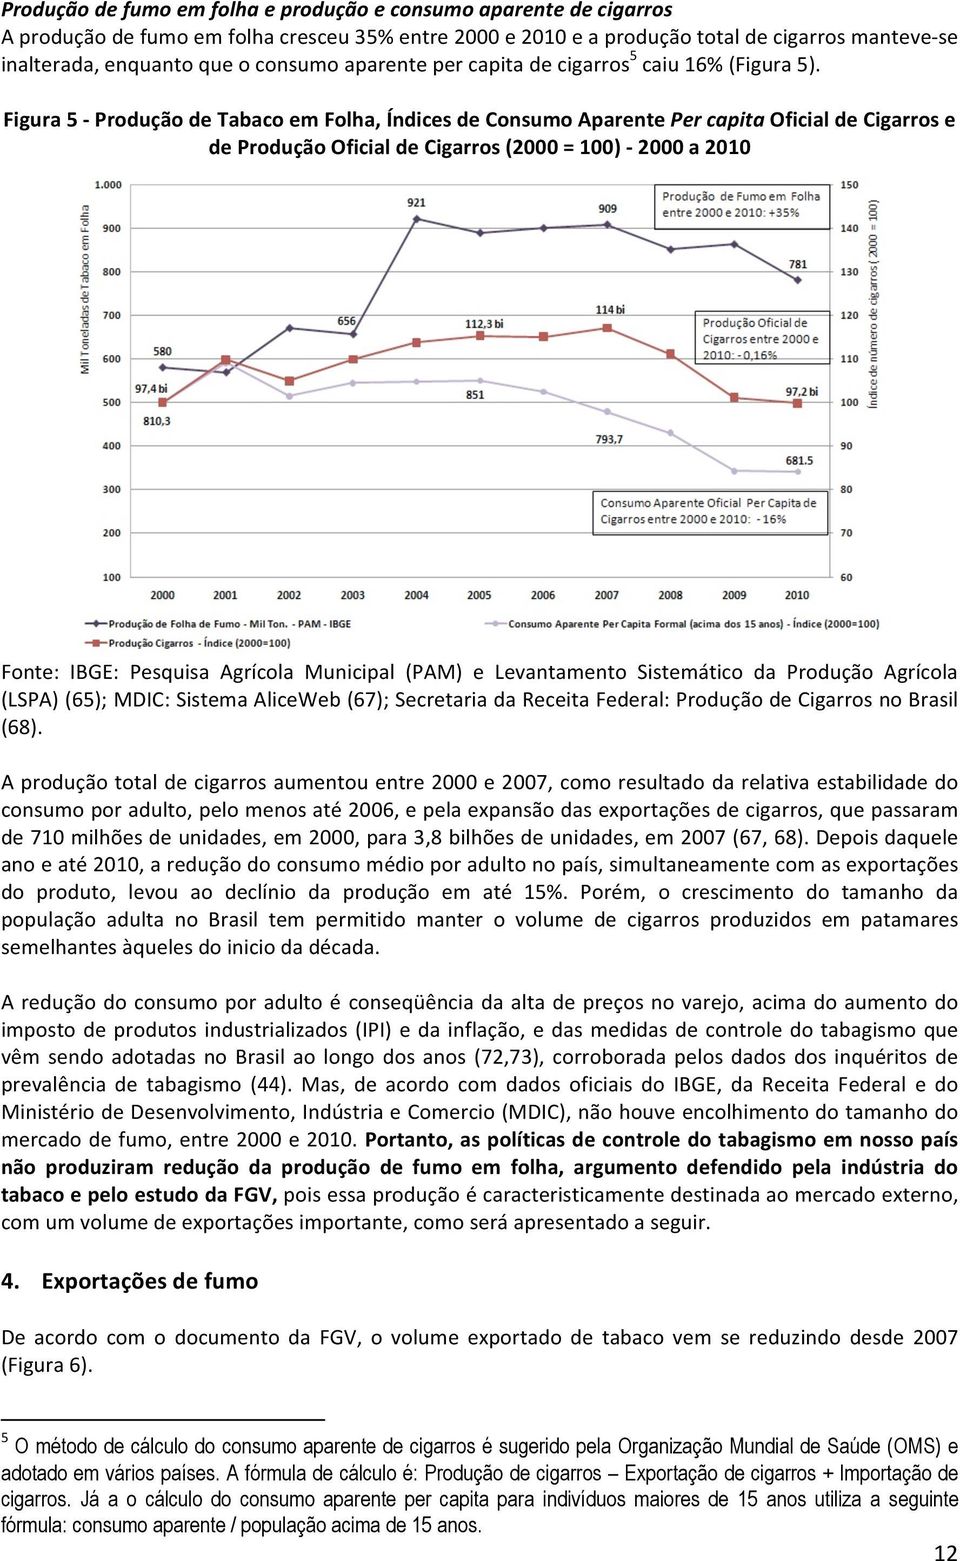 Figura 5 - Produção de Tabaco em Folha, Índices de Consumo Aparente Per capita Oficial de Cigarros e de Produção Oficial de Cigarros (2000 = 100) - 2000 a 2010 Fonte: IBGE: Pesquisa Agrícola